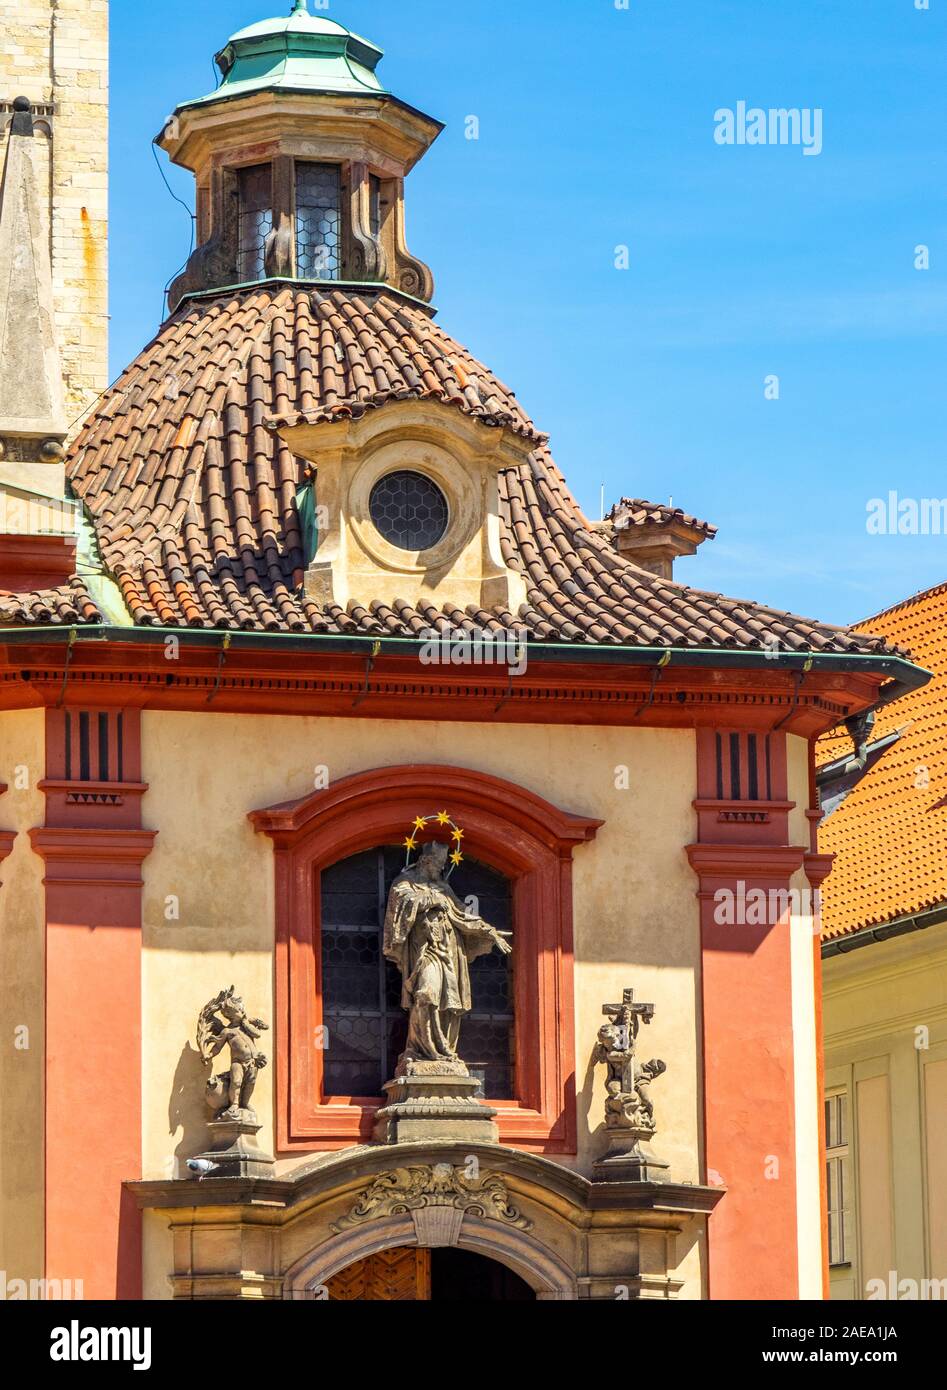 Statua in pietra arenaria di San Giovanni sulla facciata della Cappella barocca di San Giovanni Nepomuk Basilica di San Giorgio Praga Repubblica Ceca. Foto Stock